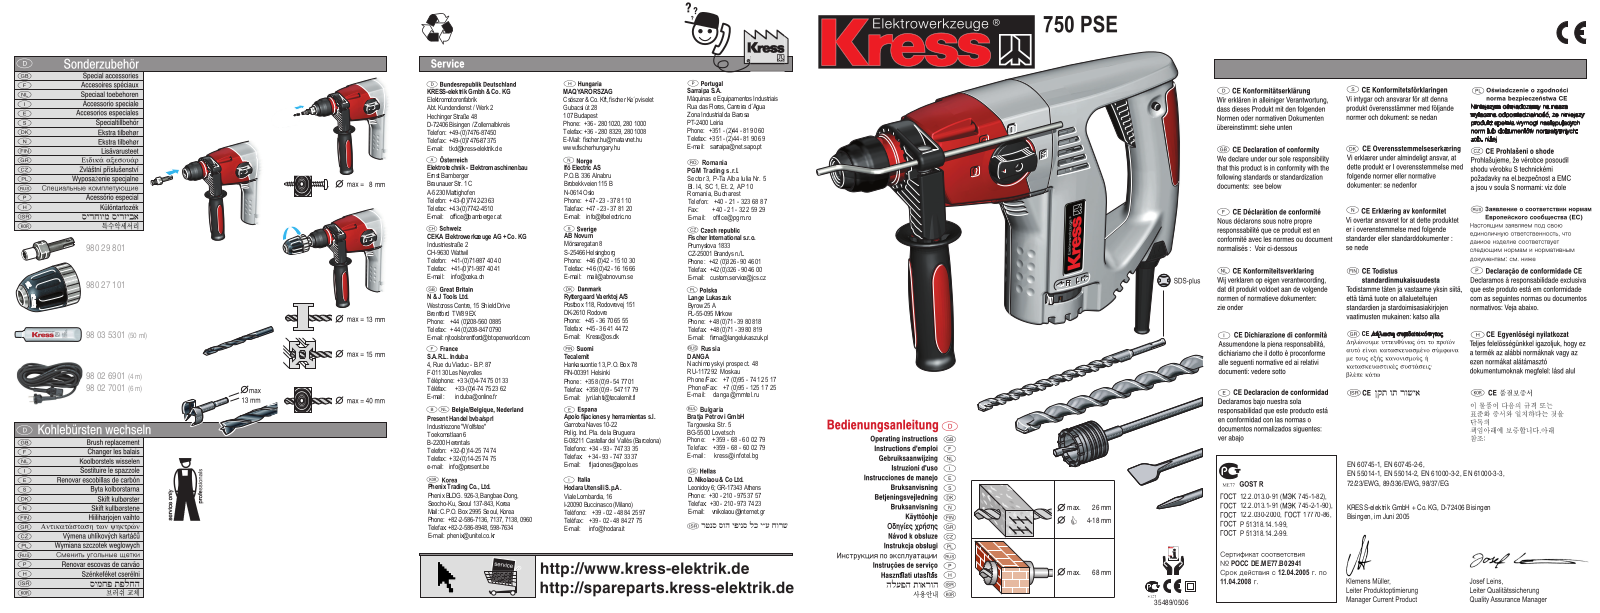 Kress 750 PSE Manual